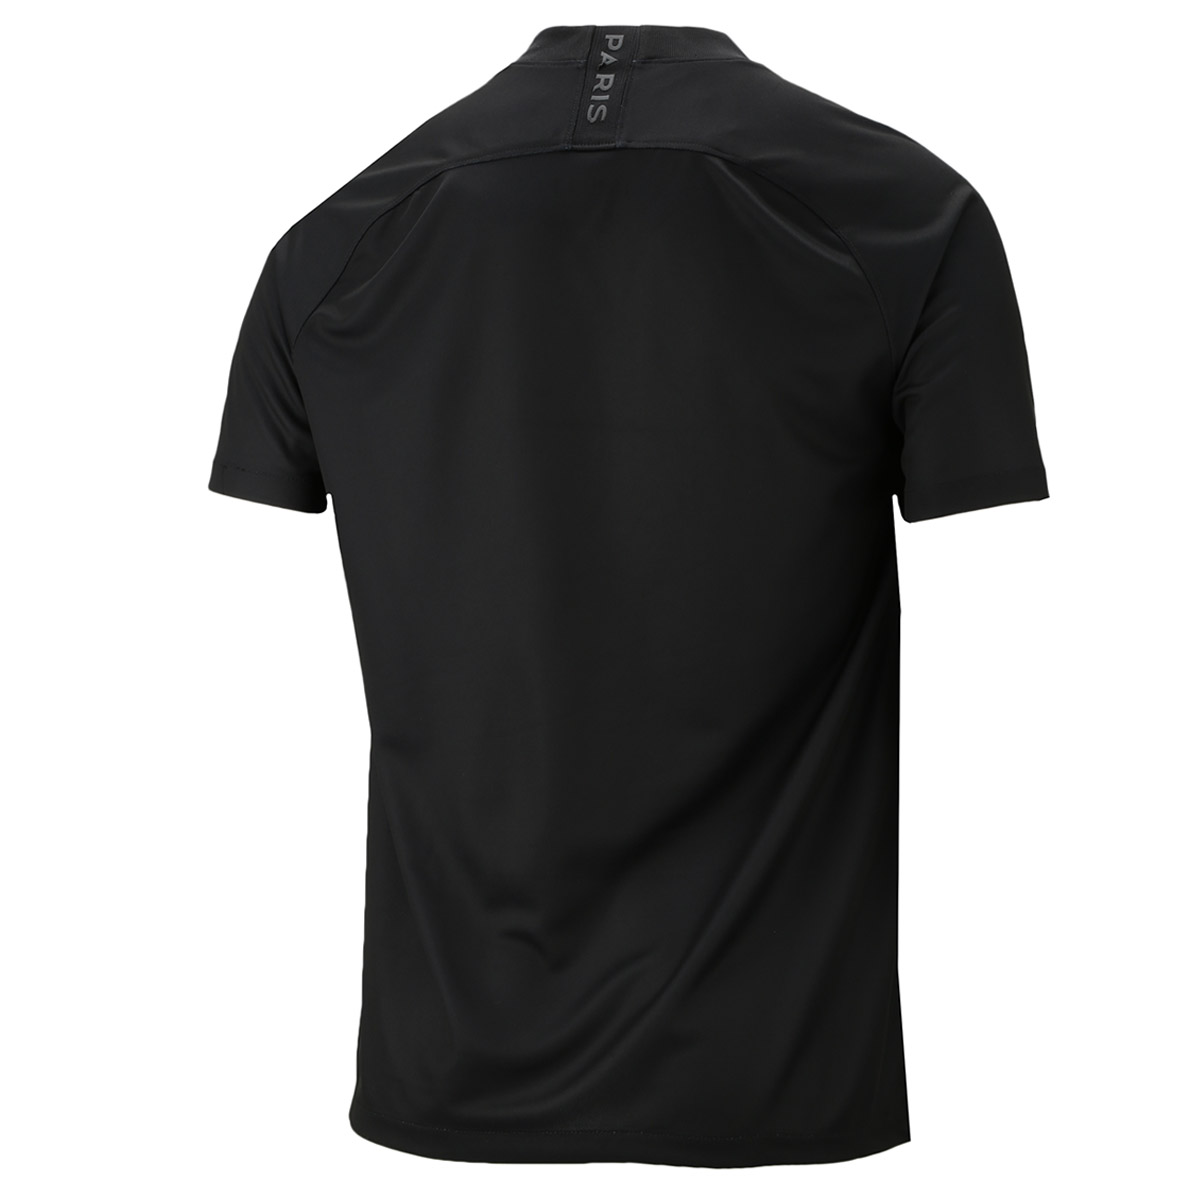 Camiseta Nike Jordan PSG Third 2019/20,  image number null